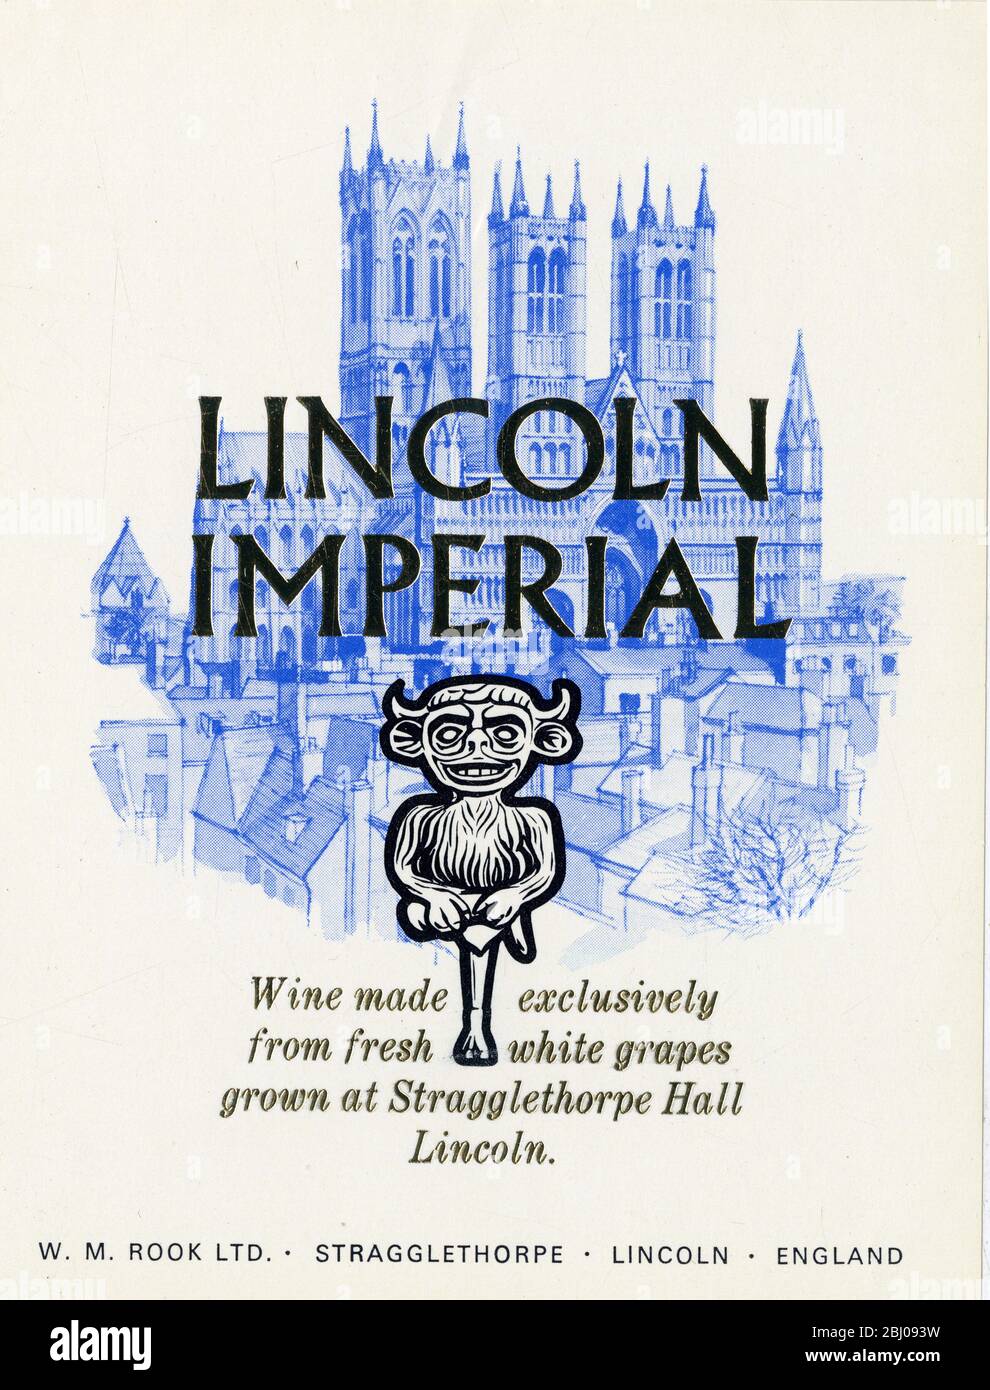 Weinetikett - Lincoln Imperial English Wine. Wein, der ausschließlich aus frischen weißen Trauben hergestellt wird, die in der Stragglethorpe Hall, Lincoln, angebaut werden. Stockfoto